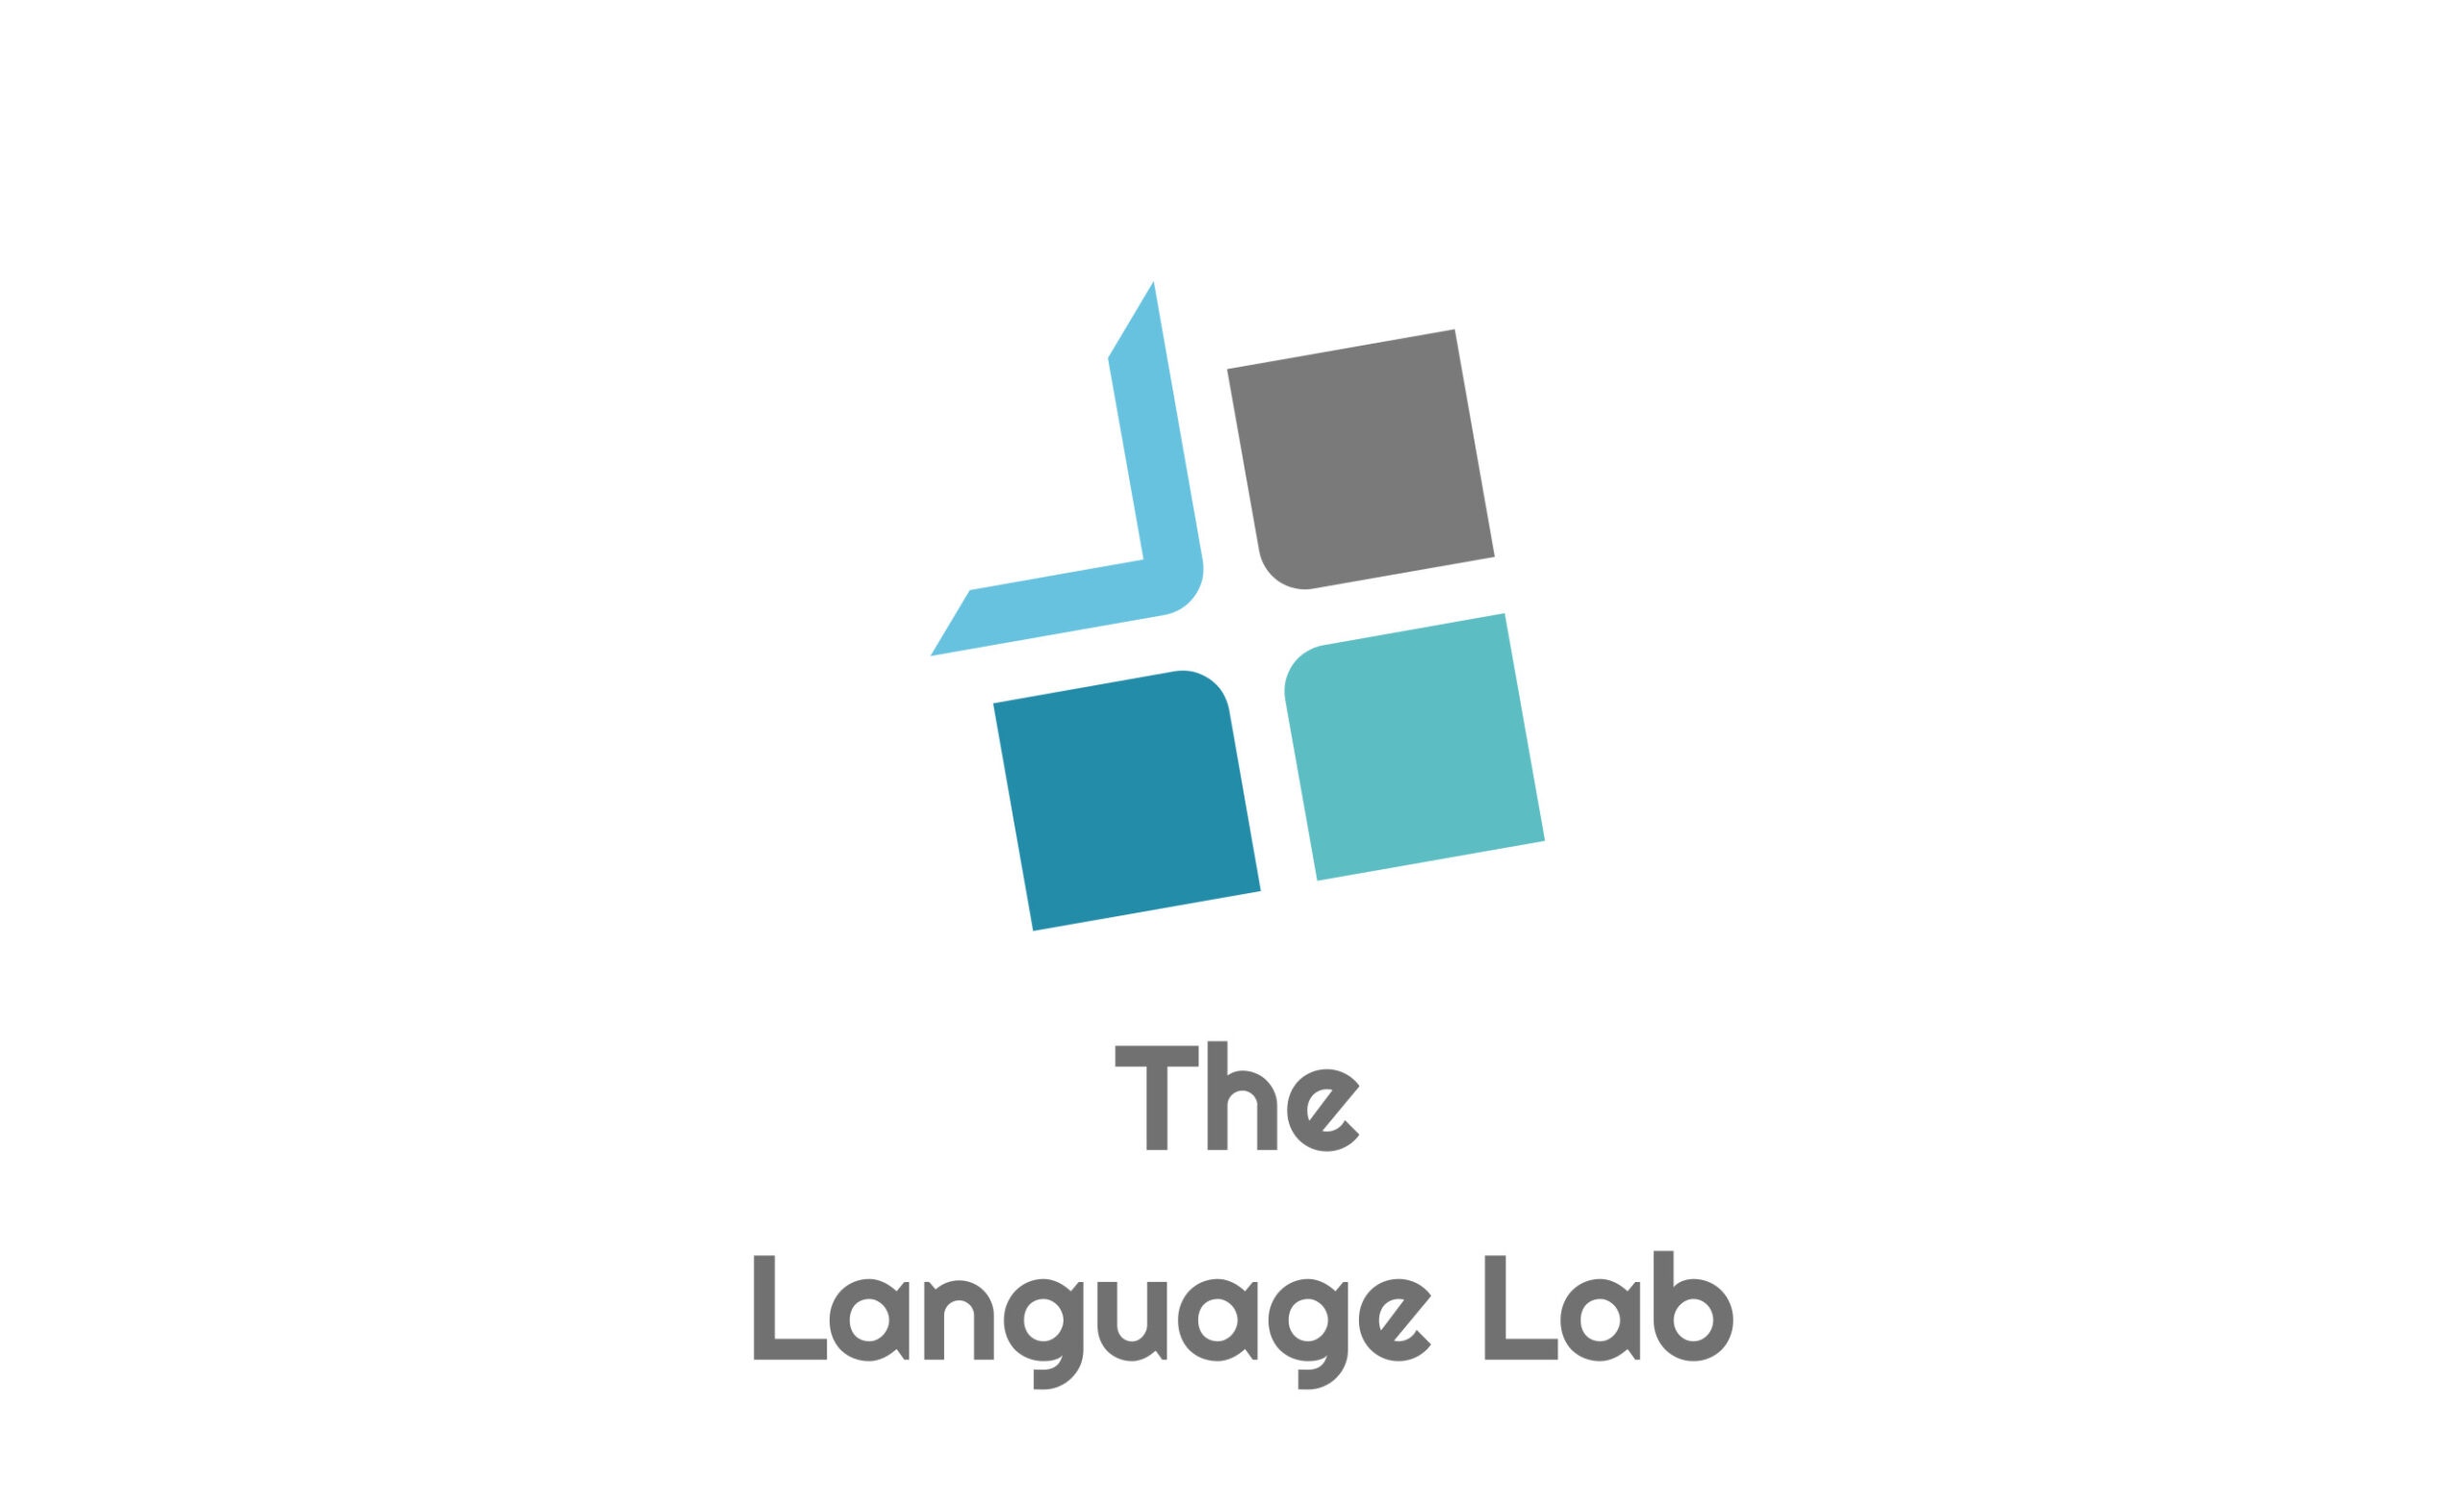 The Language Lab